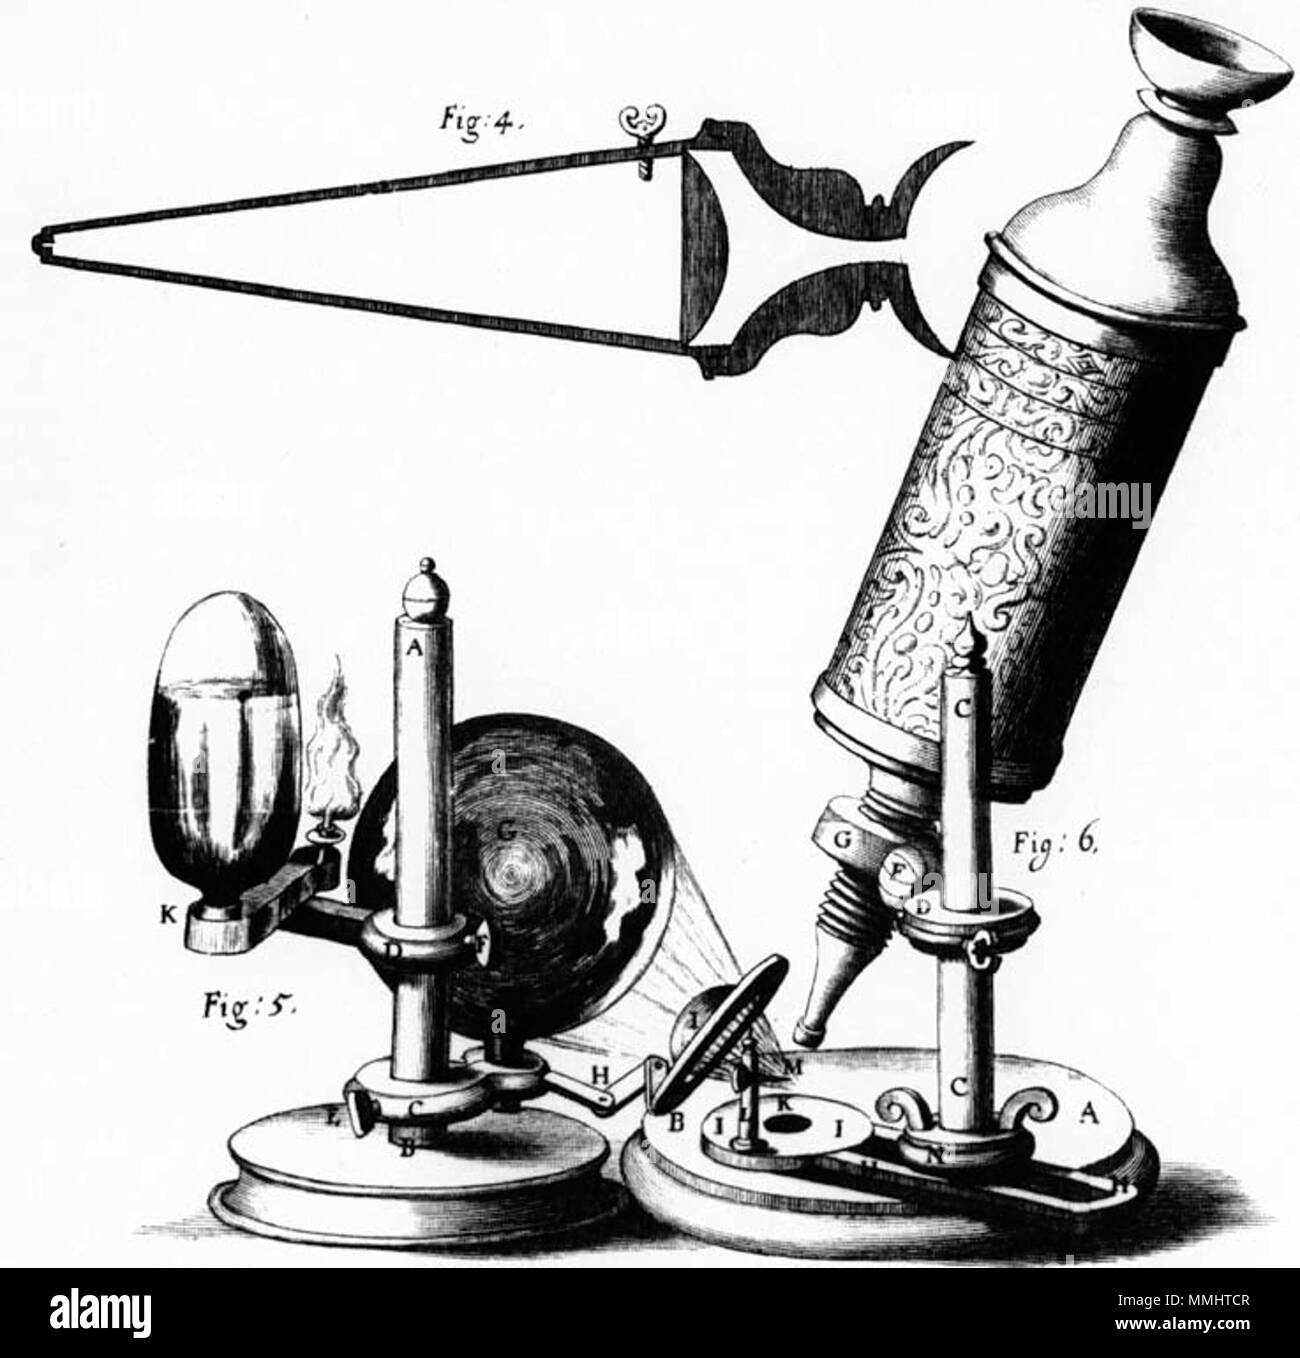 English: The microscope of Robert Hooke, sketch from his original  publication. Deutsch: Das Mikroskop von Robert Hooke, Zeichnung aus seiner  Originalveröffentlichung. . 1665. Robert Hooke Hooke Microscope Stock Photo  - Alamy